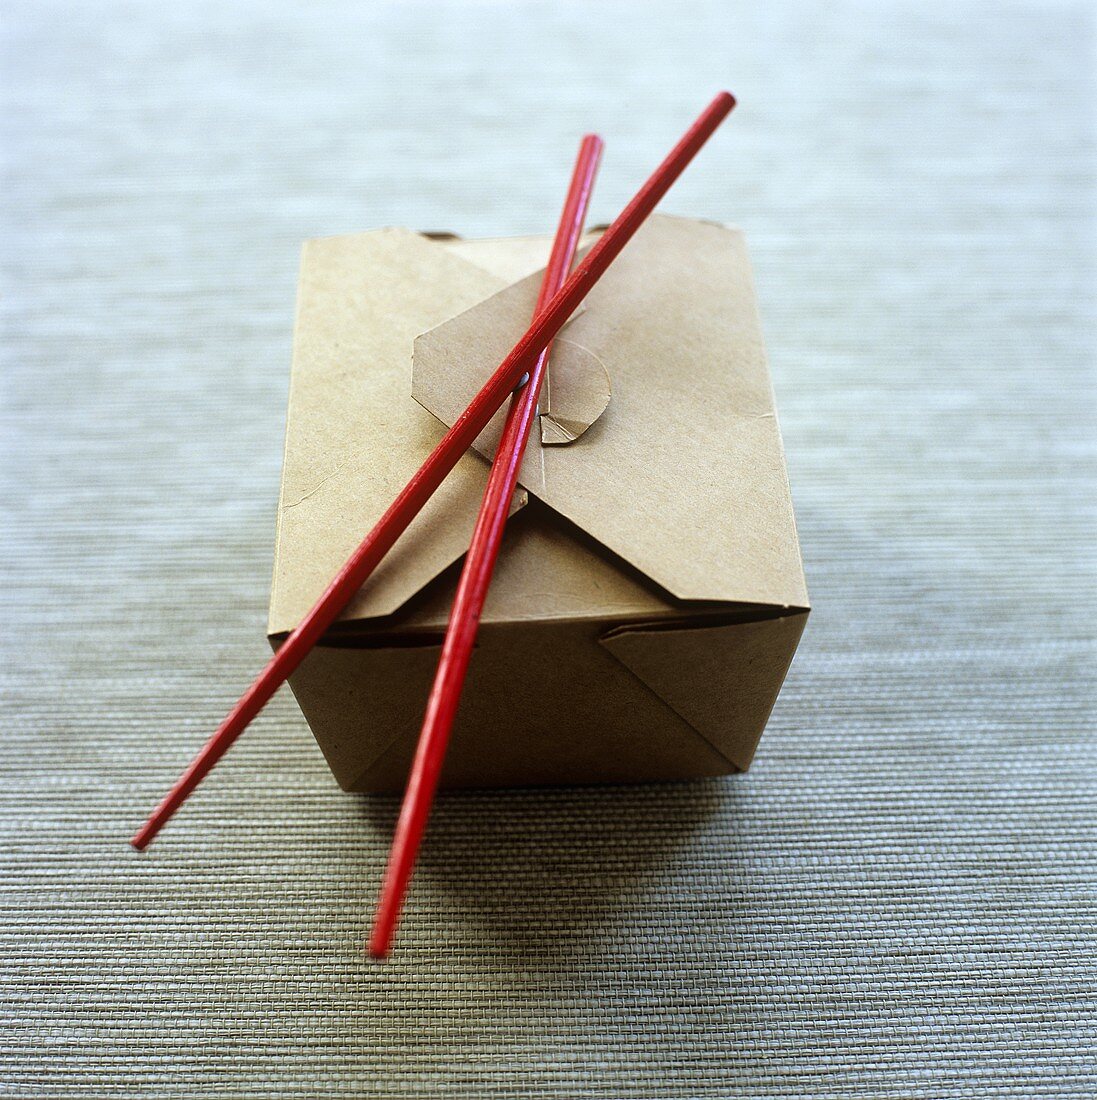 A noodle box with chopsticks